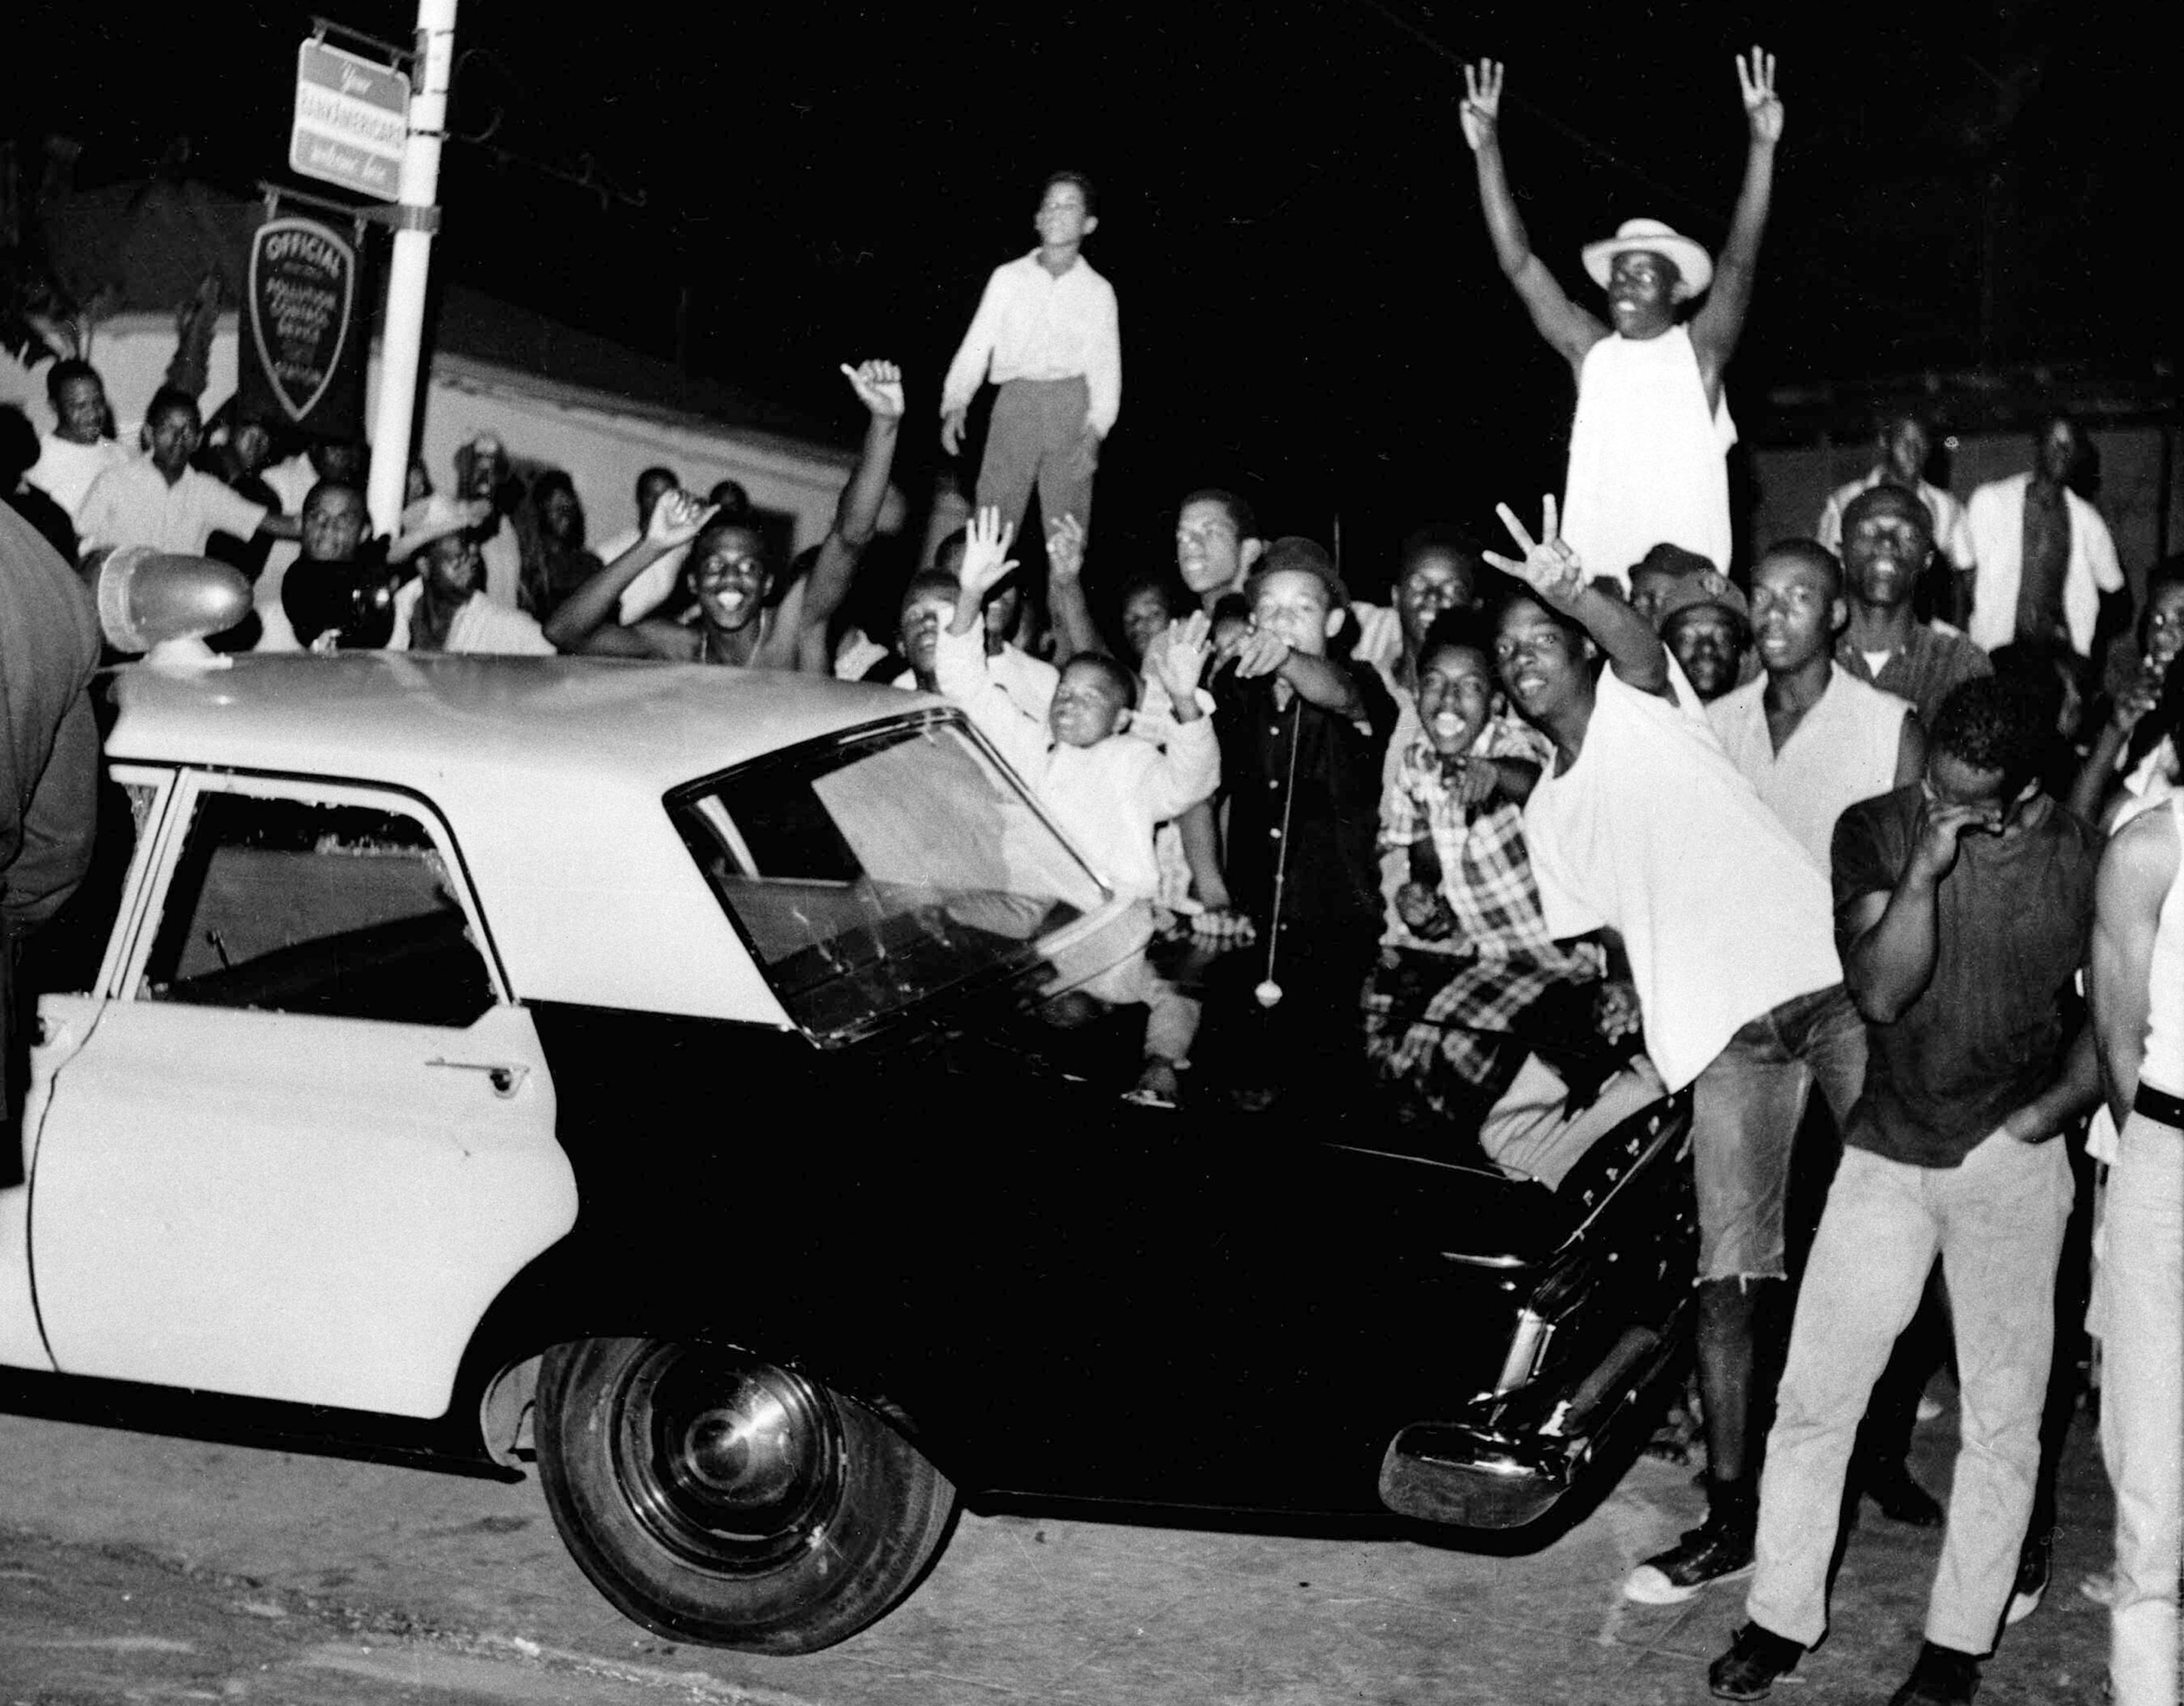 1965 年洛杉矶瓦特大暴乱